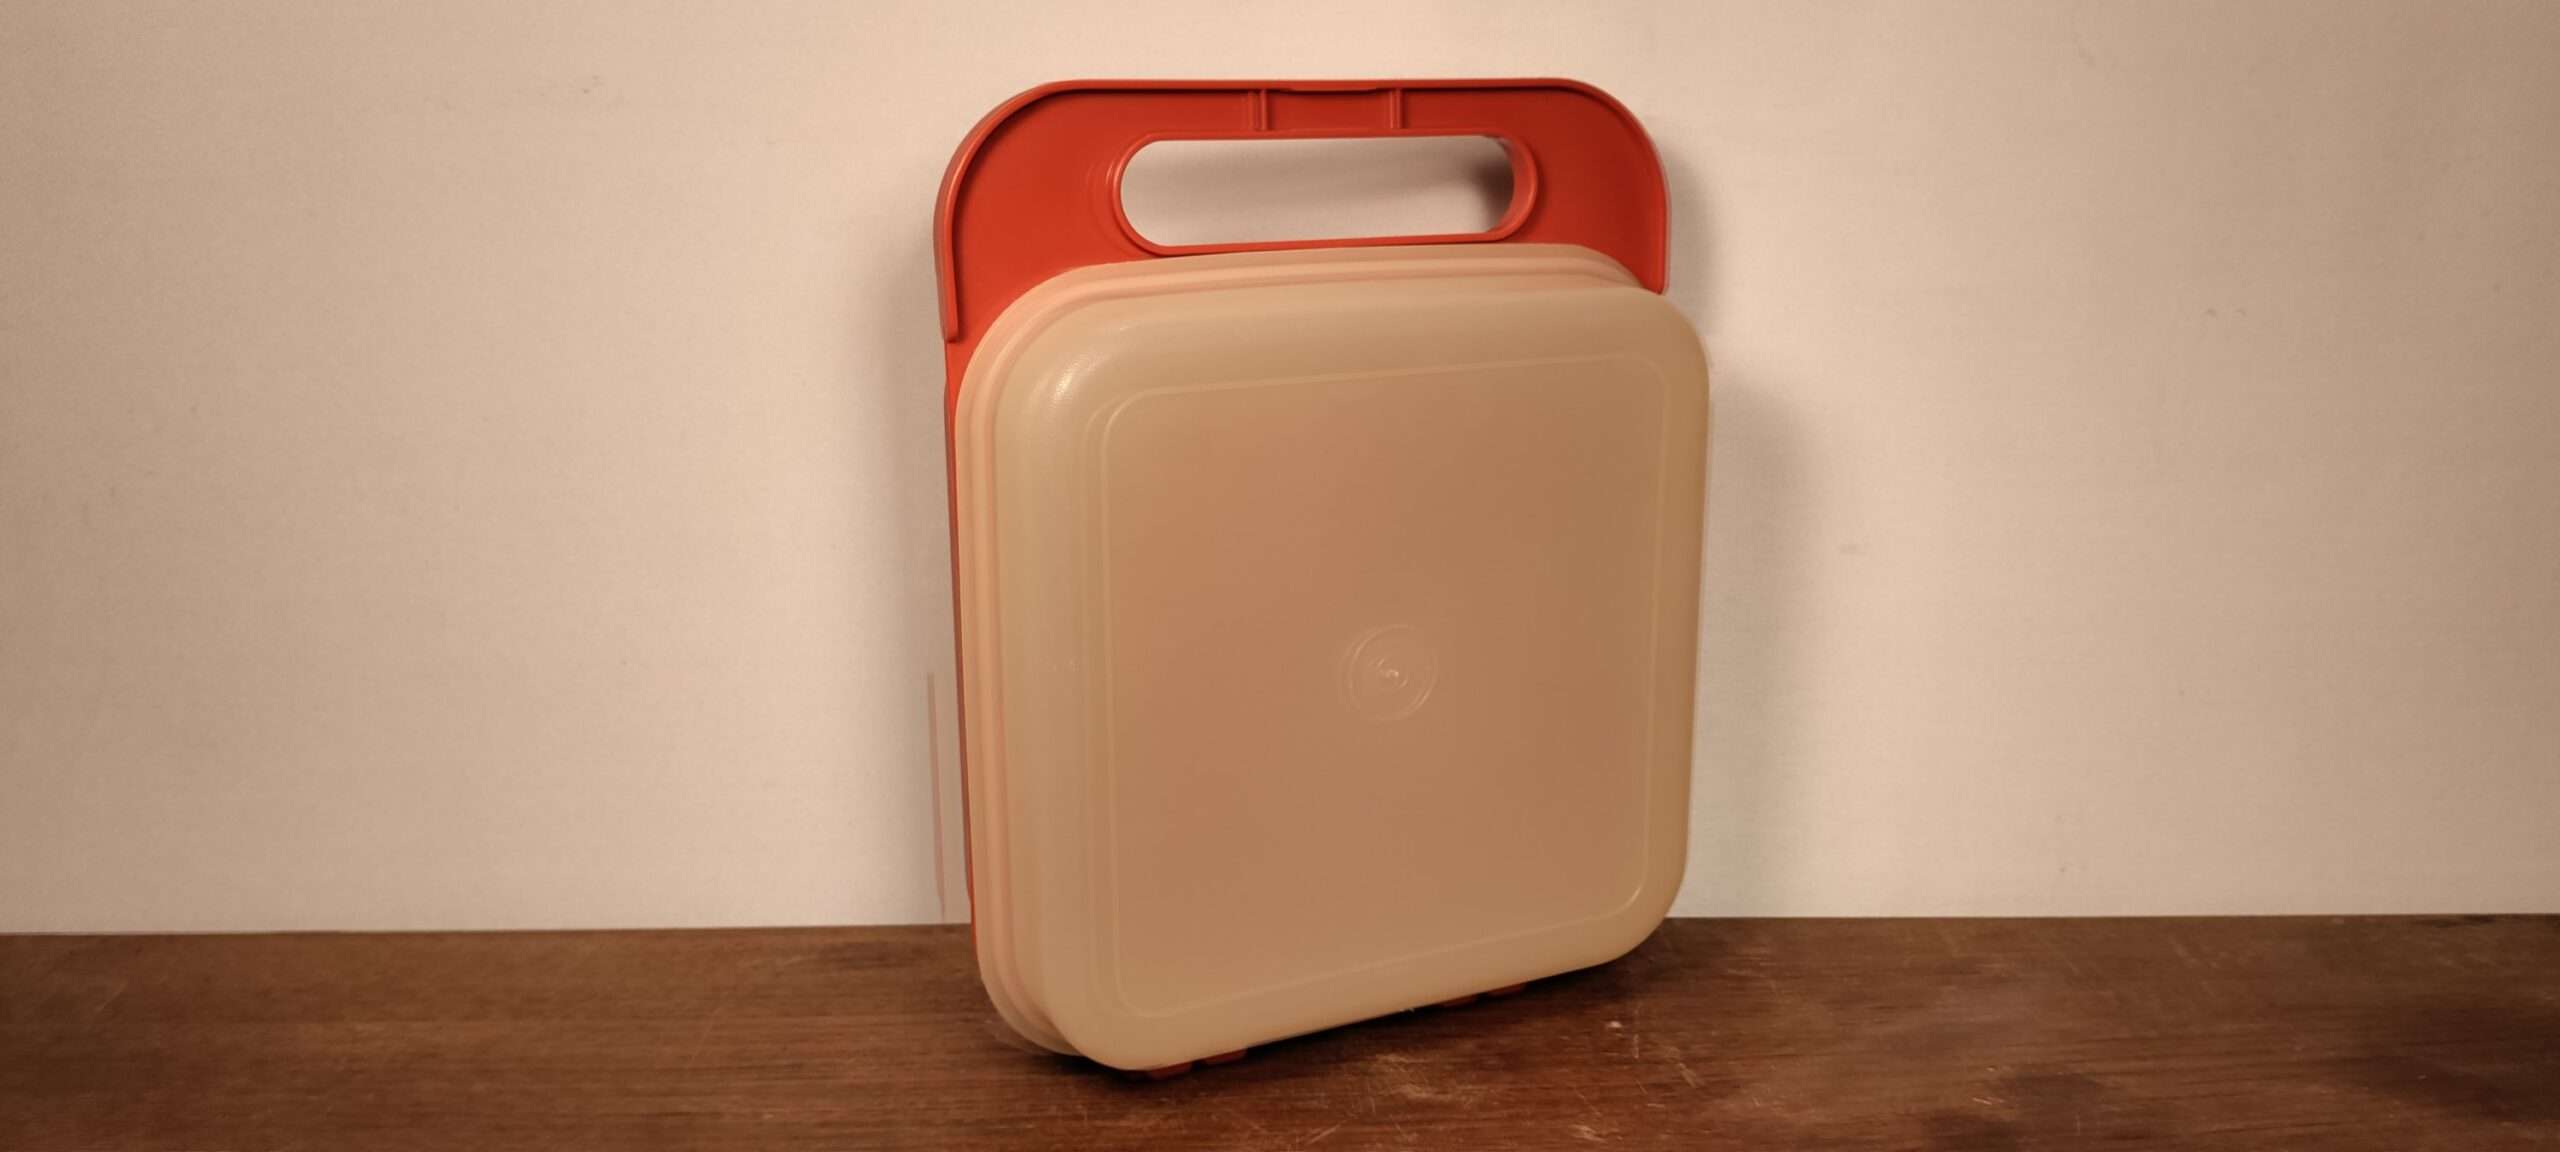 George Eliot Egypten Arrangement Vintage Tupperware Lunchbox - madkasse. Orangerød. • Møllers  smukkelamper.dk - Retro og vintage lamper og lampedele